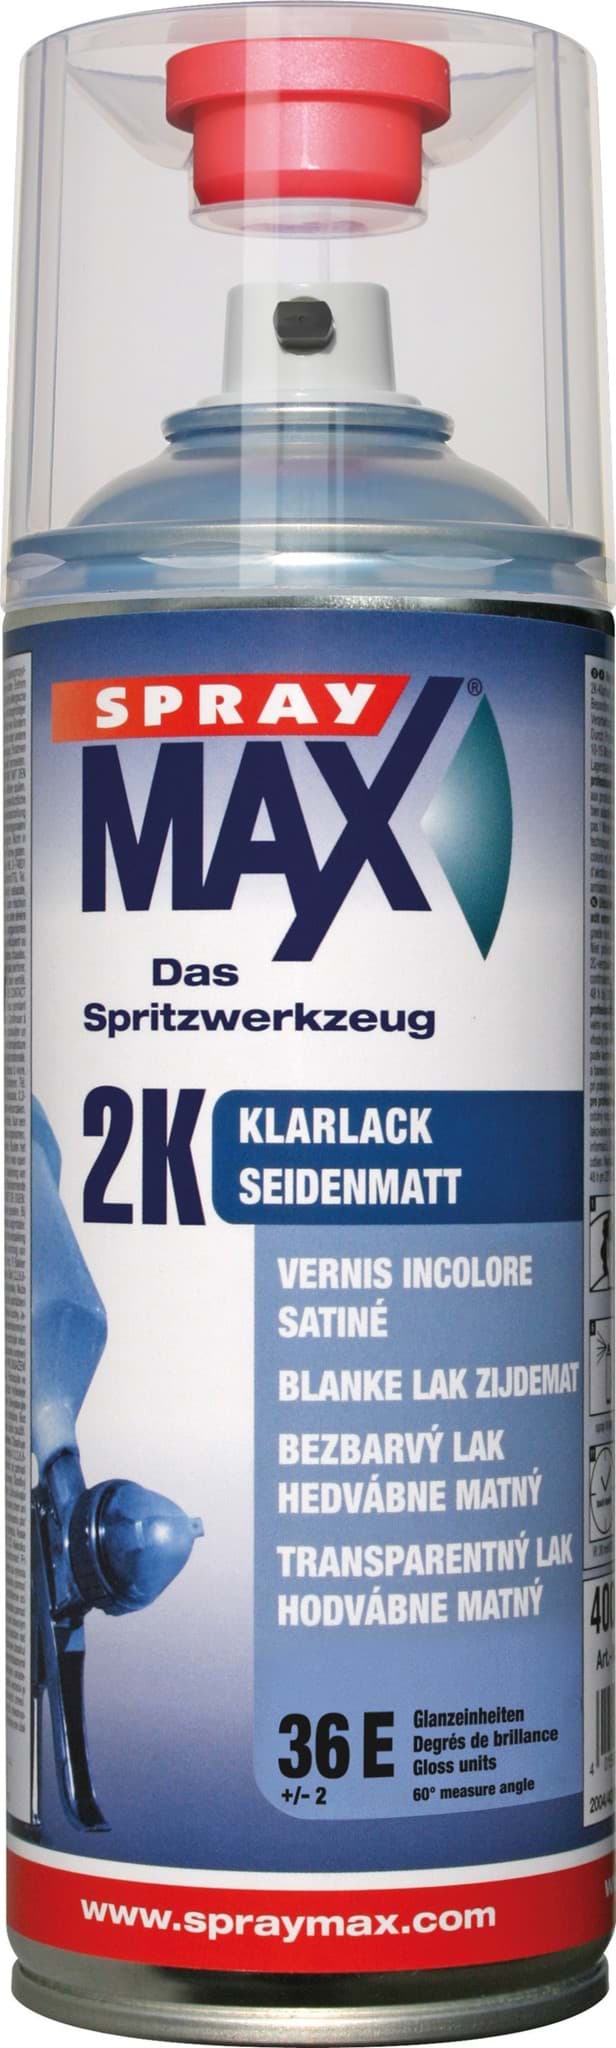 SprayMax 2K Klarlack seidenmatt 680067 resmi